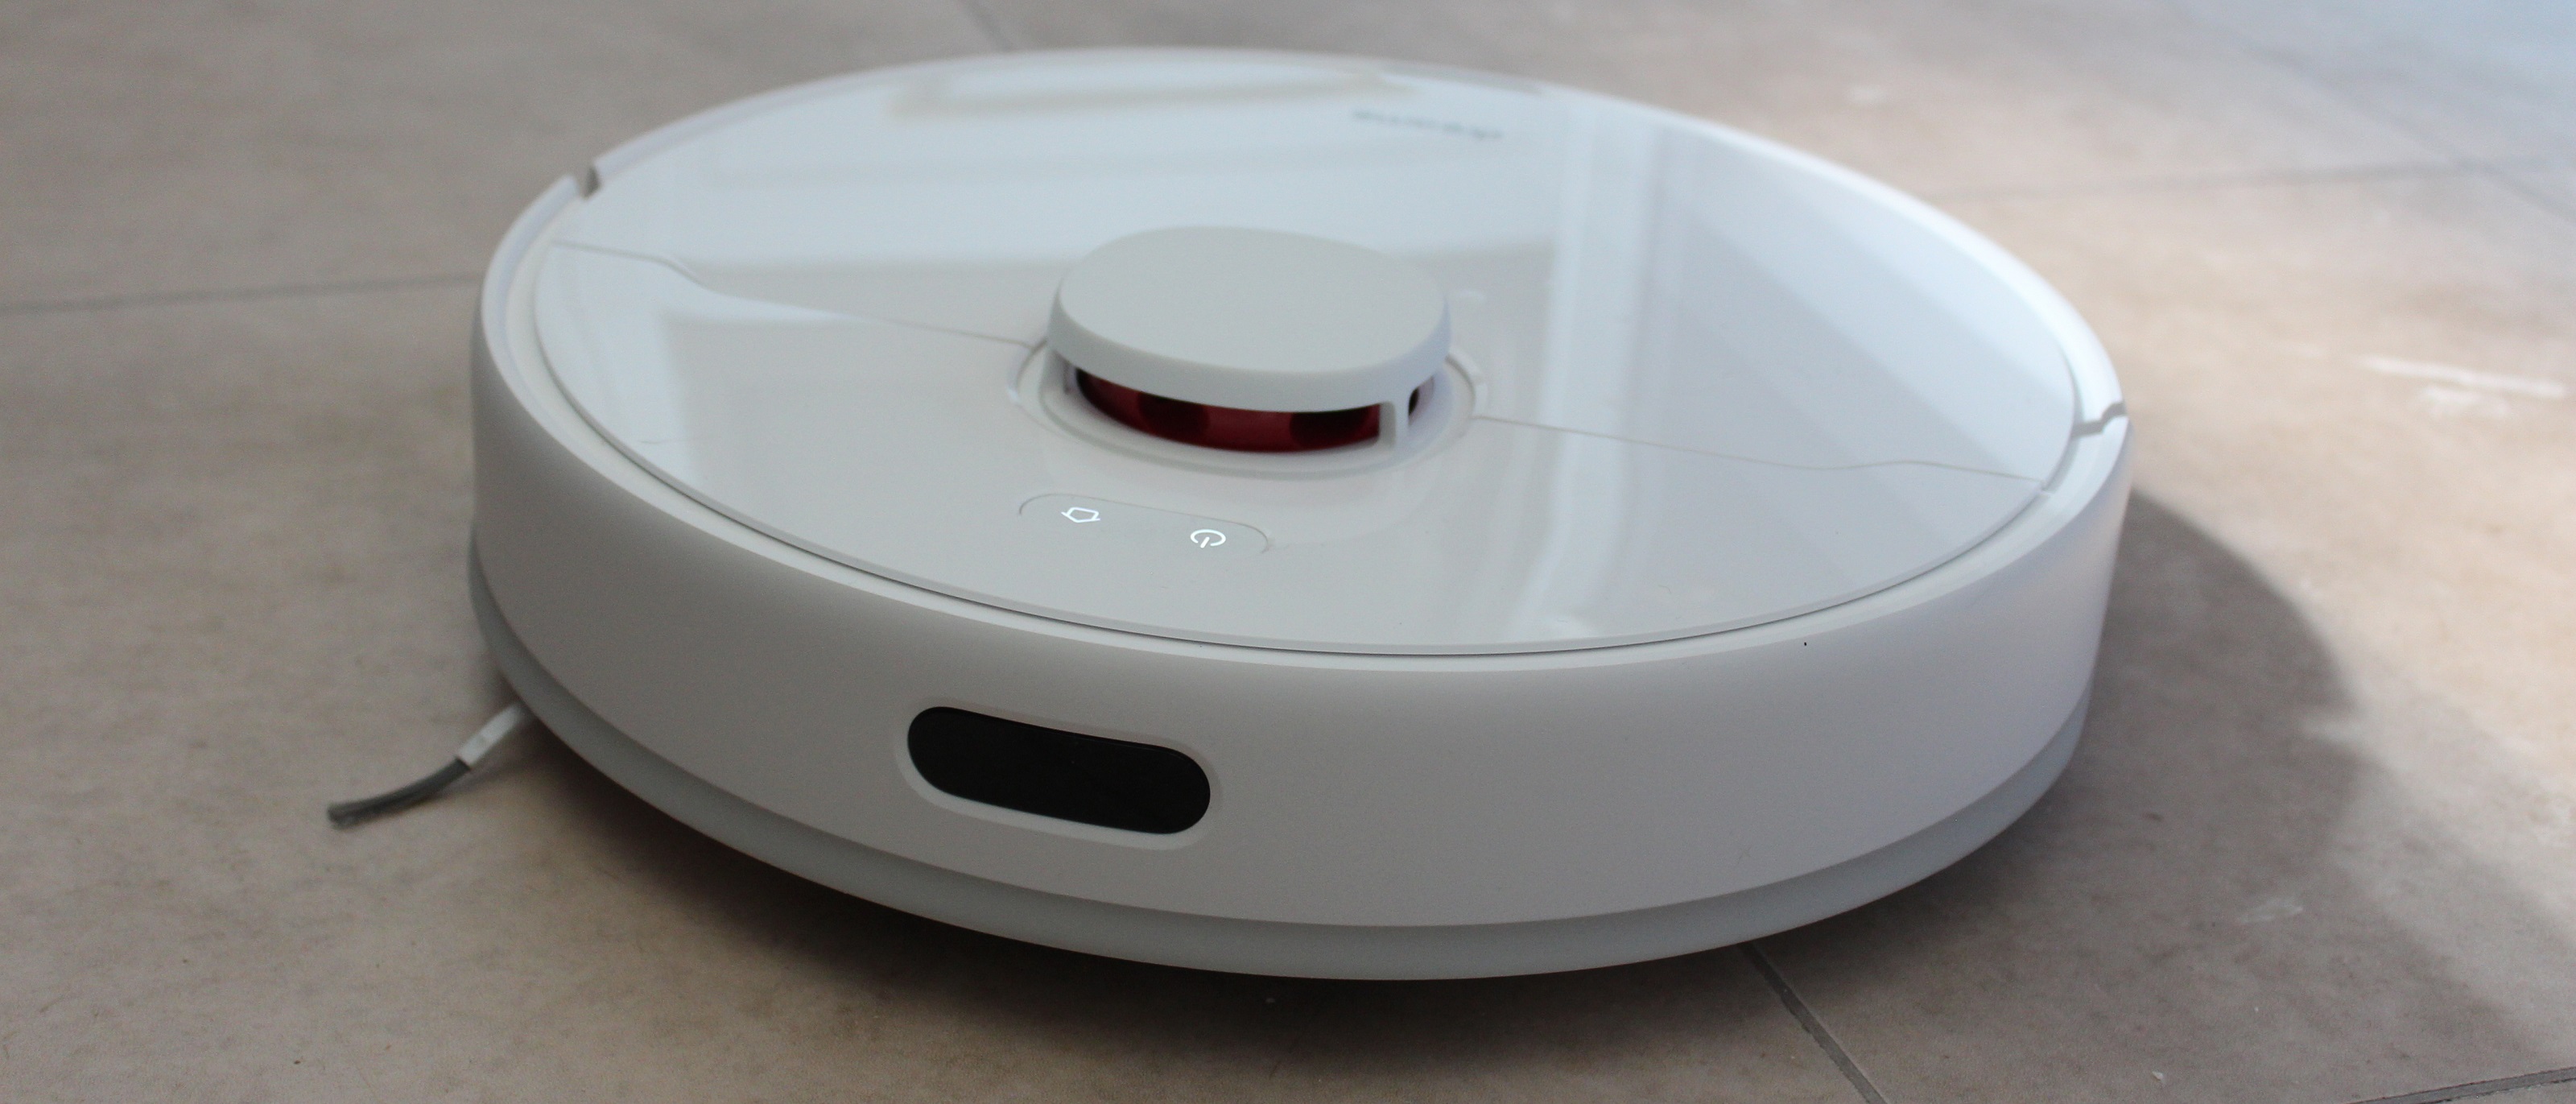 Dreametech D10 Plus Robot Vacuum and Mop review | TechRadar